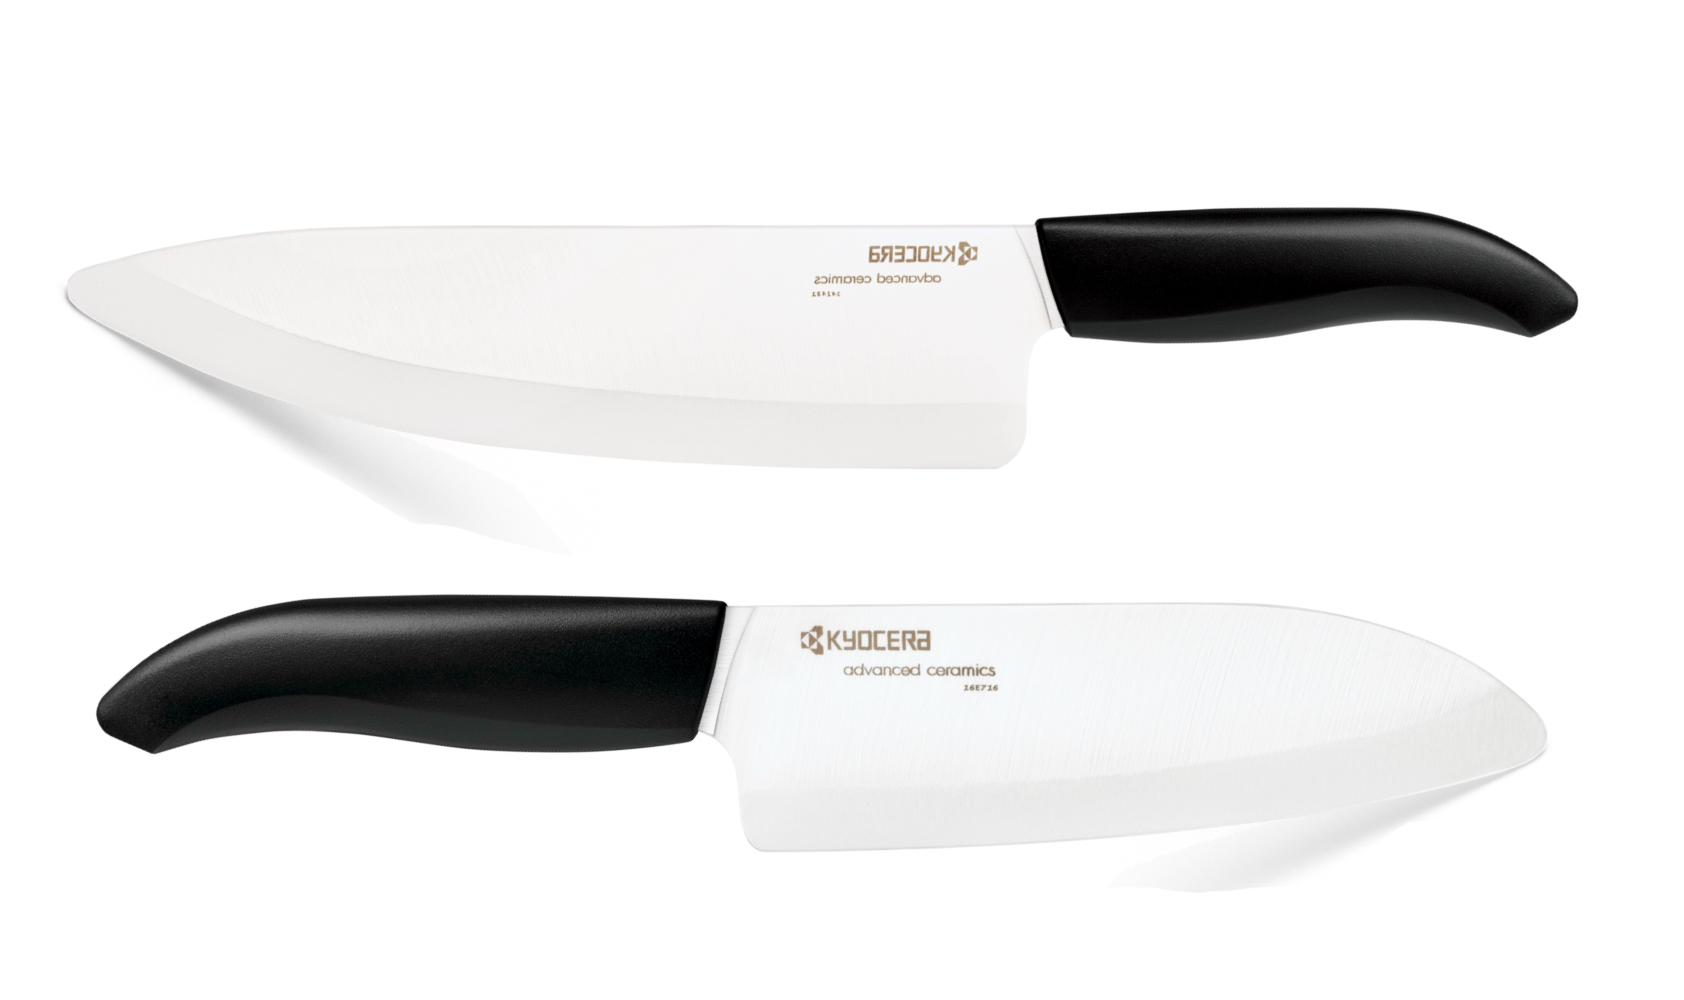 Jaapani nuga ostma minnes võib suur valik erineva suuruse, kuju ja välimusega lõikeriistu esmapilgul silme eest kirjuks võtta. Aga ega alguses pole tegelikult t